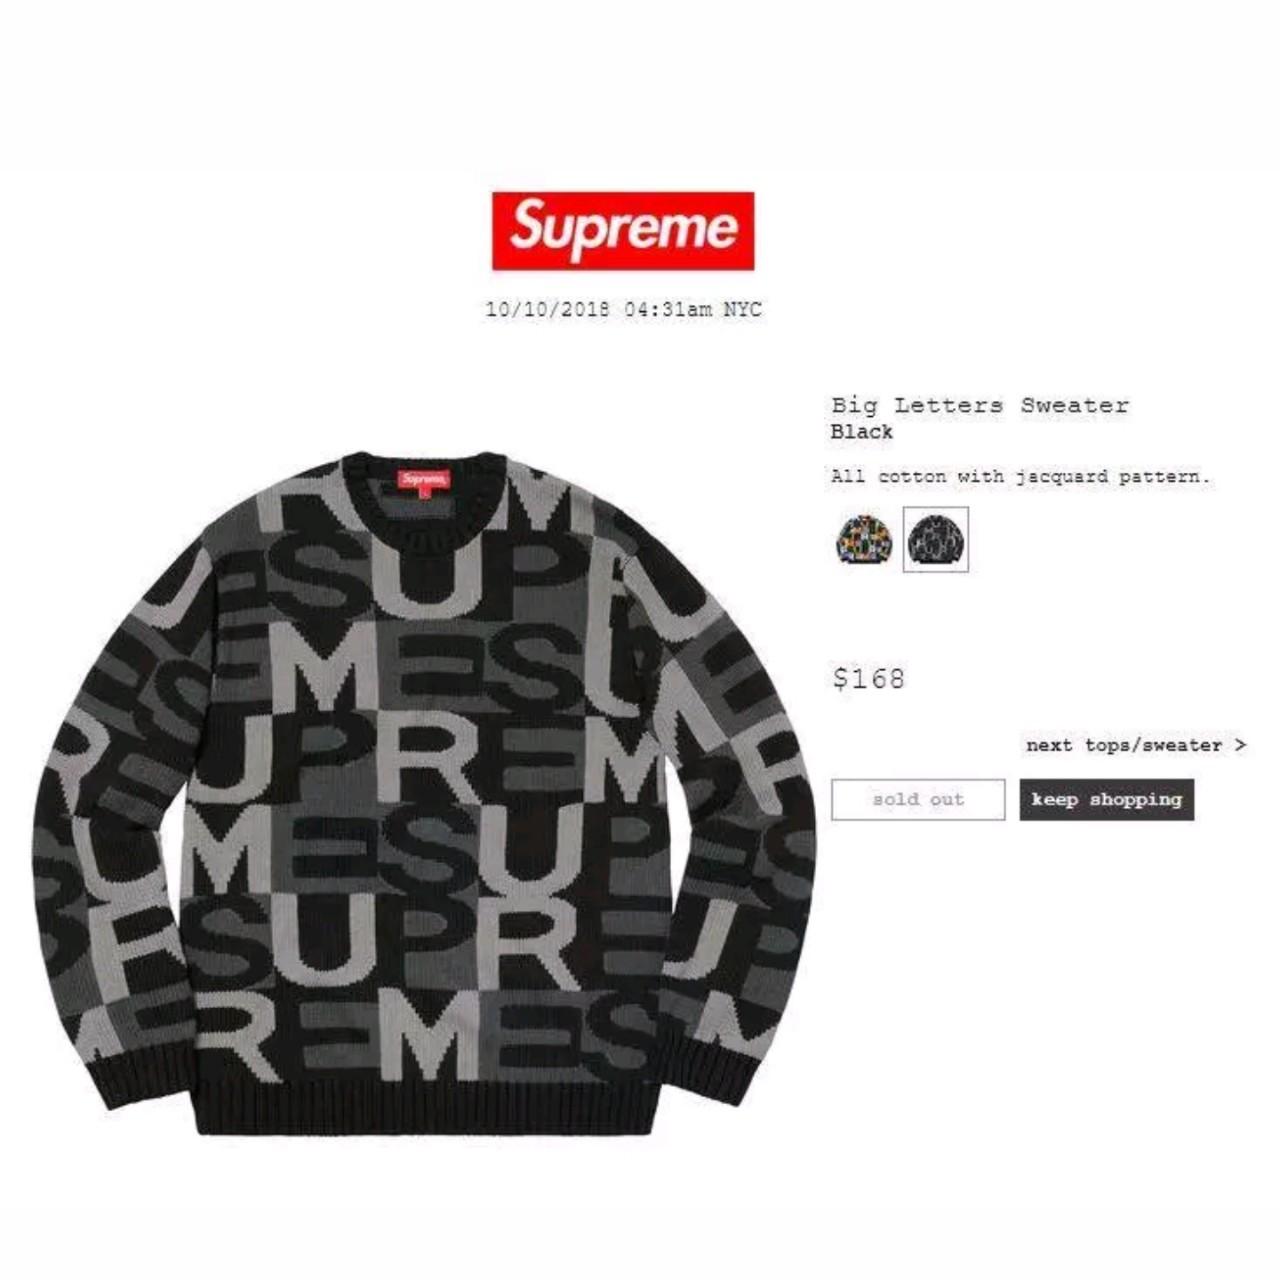 Supreme Big Letter Sweater Black Medium SOLD OUT - Depop